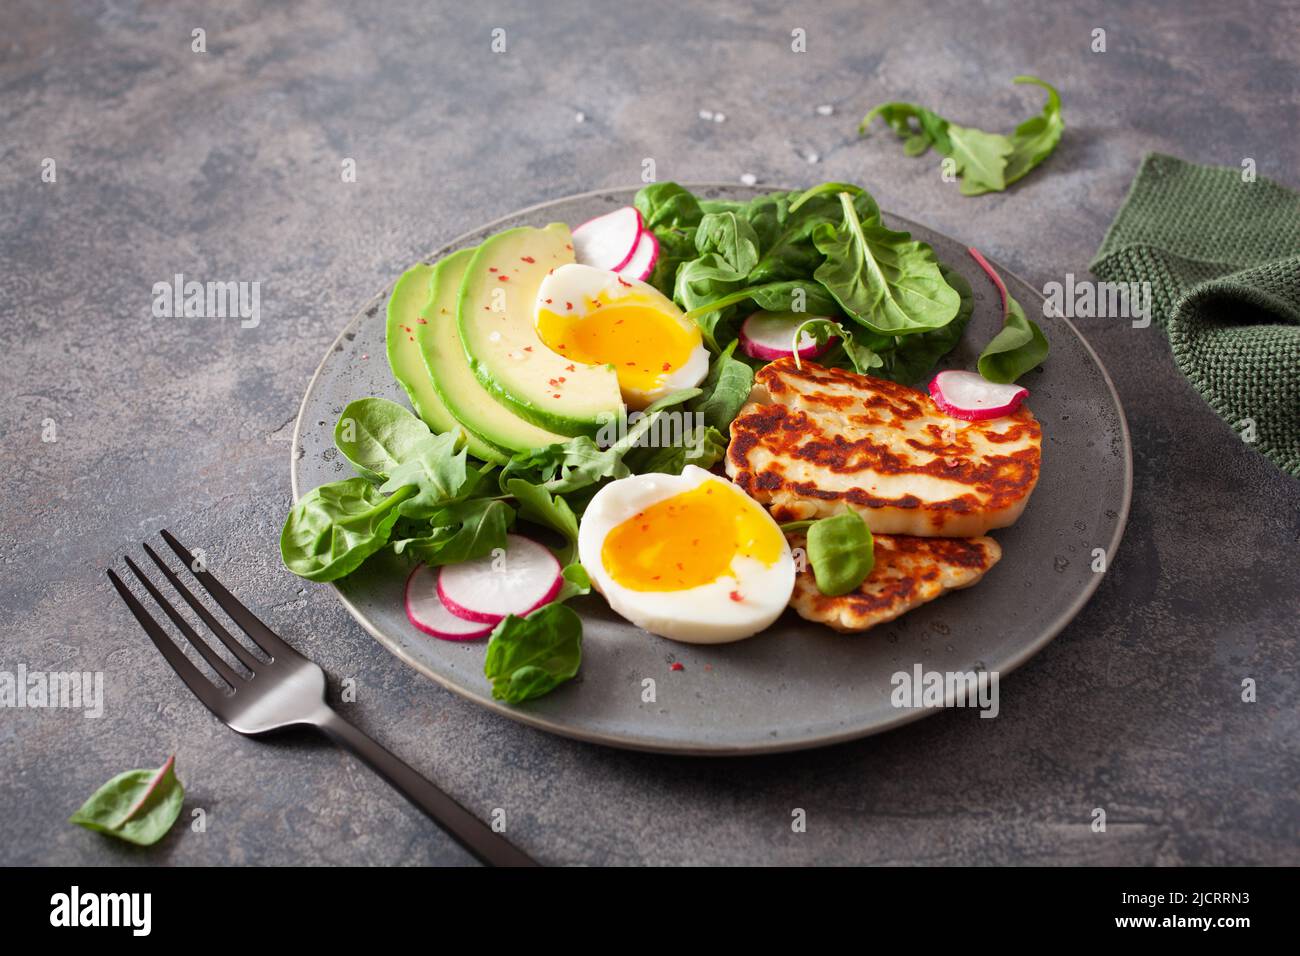 Ceto paleo dieta saludable Desayuno: huevos, aguacate, queso halloumi, ensalada de hojas Foto de stock